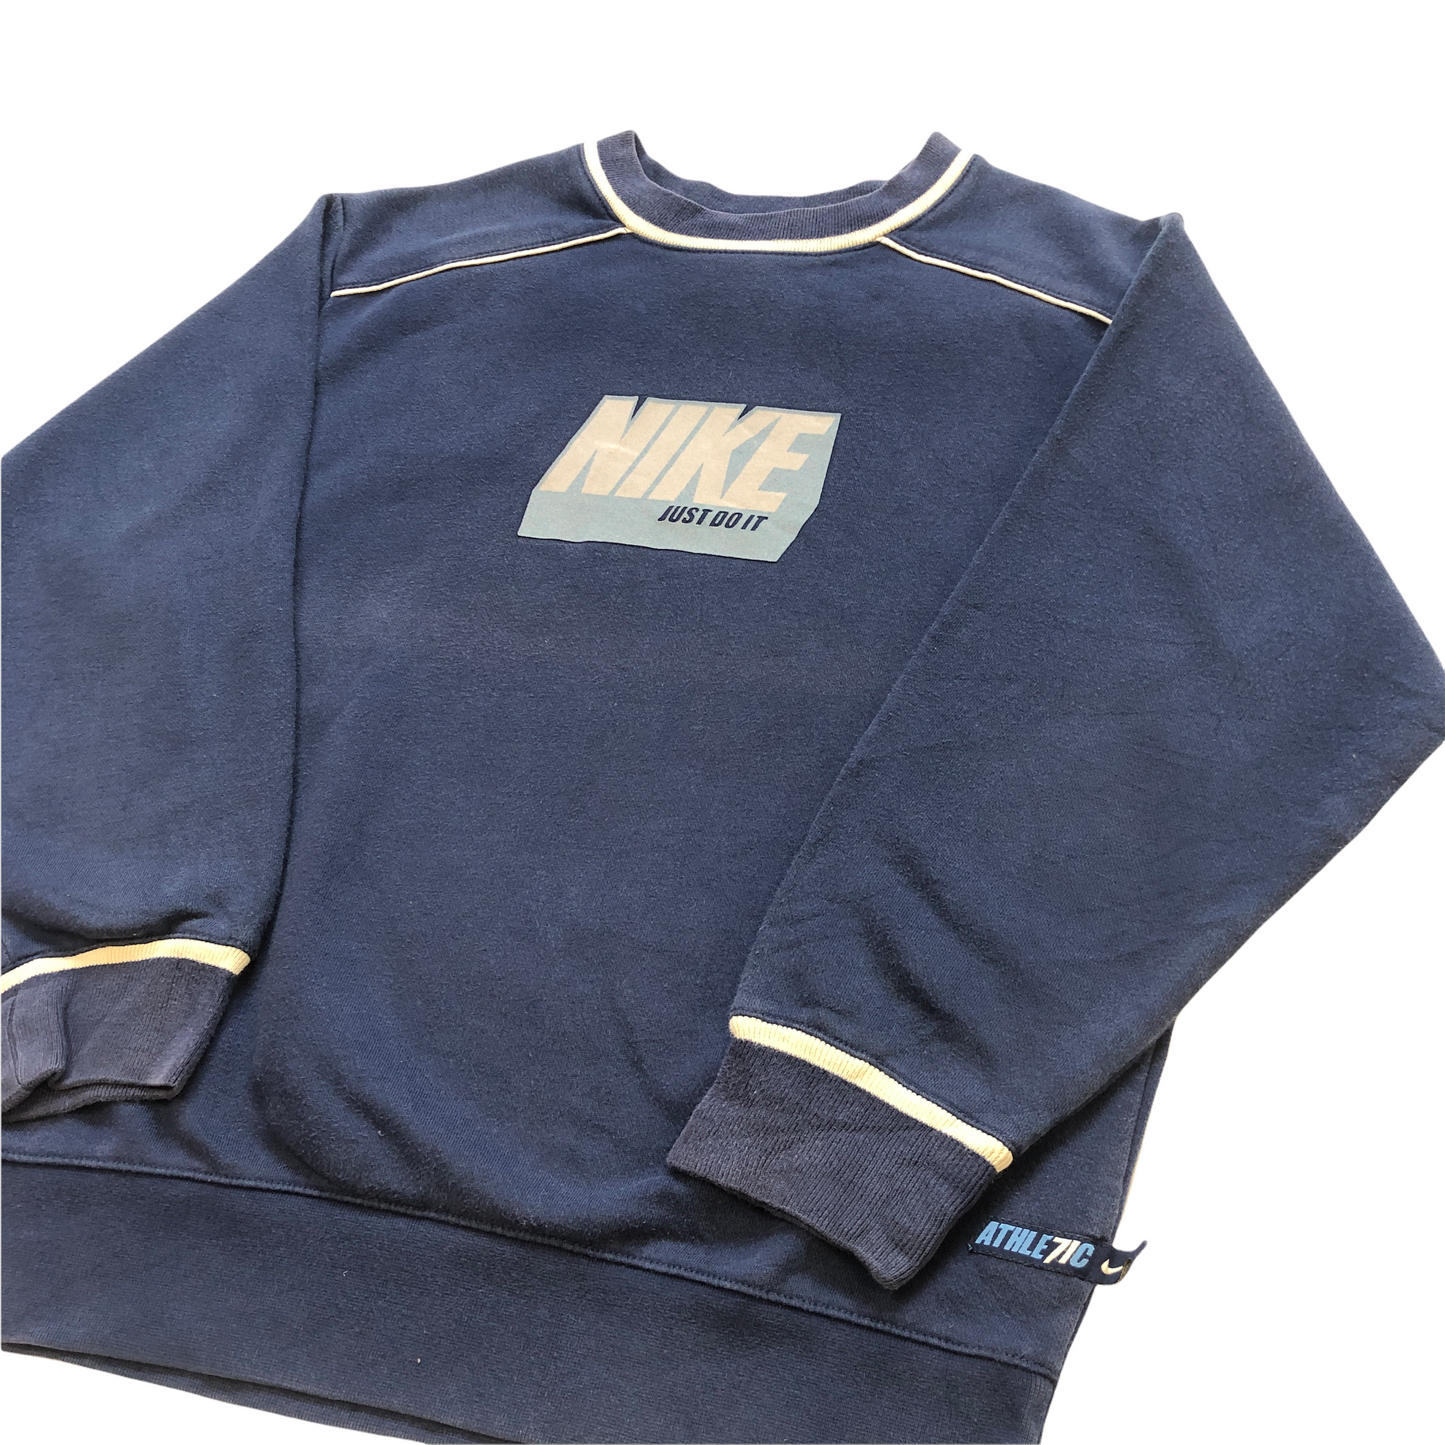 Vintage 90's Nike Sweatshirt (Age 10)